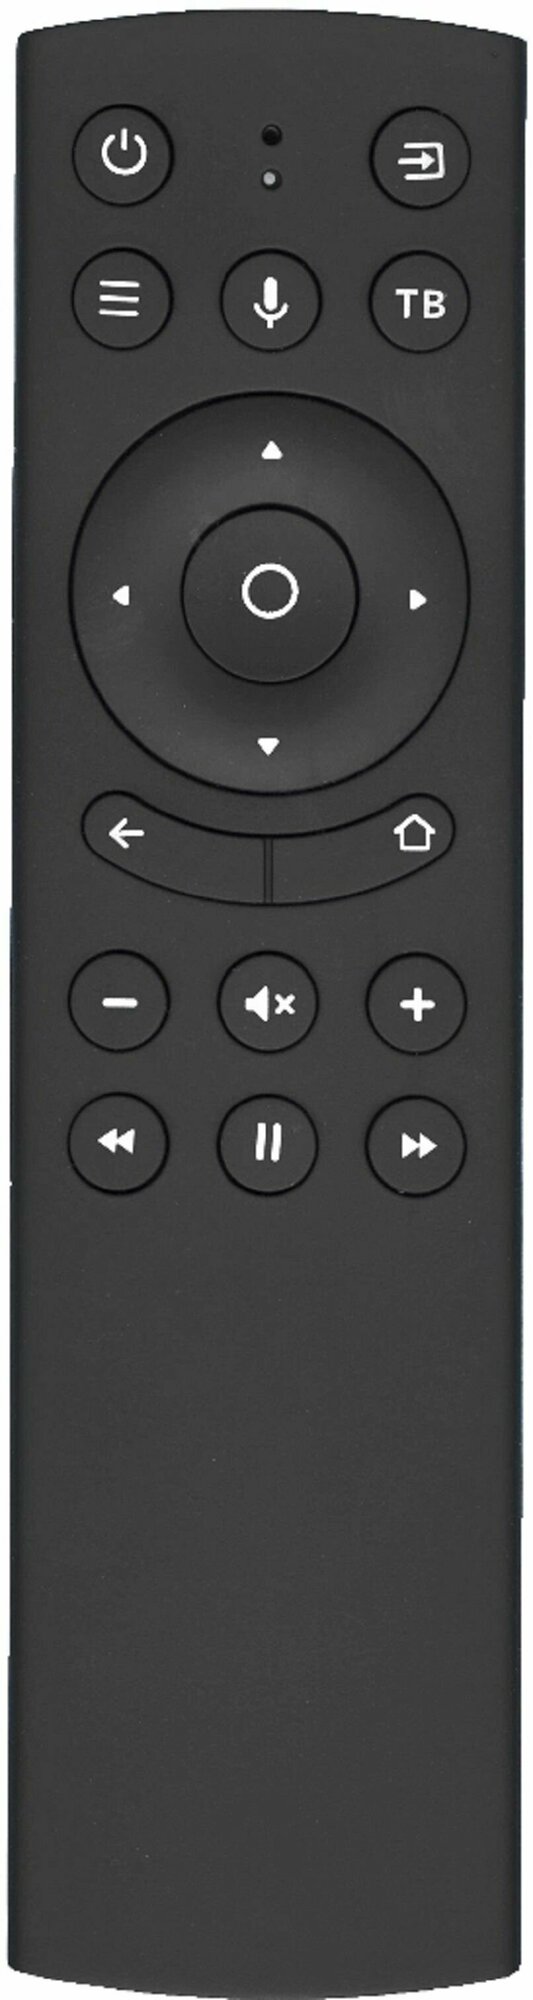 Пульт VOICE RC18 для DEXP U50E9100Q / HAIER / Novex / Telefunken / Hi / Leff / AMCV / Hyundai для SMART TV С голосовым управлением!